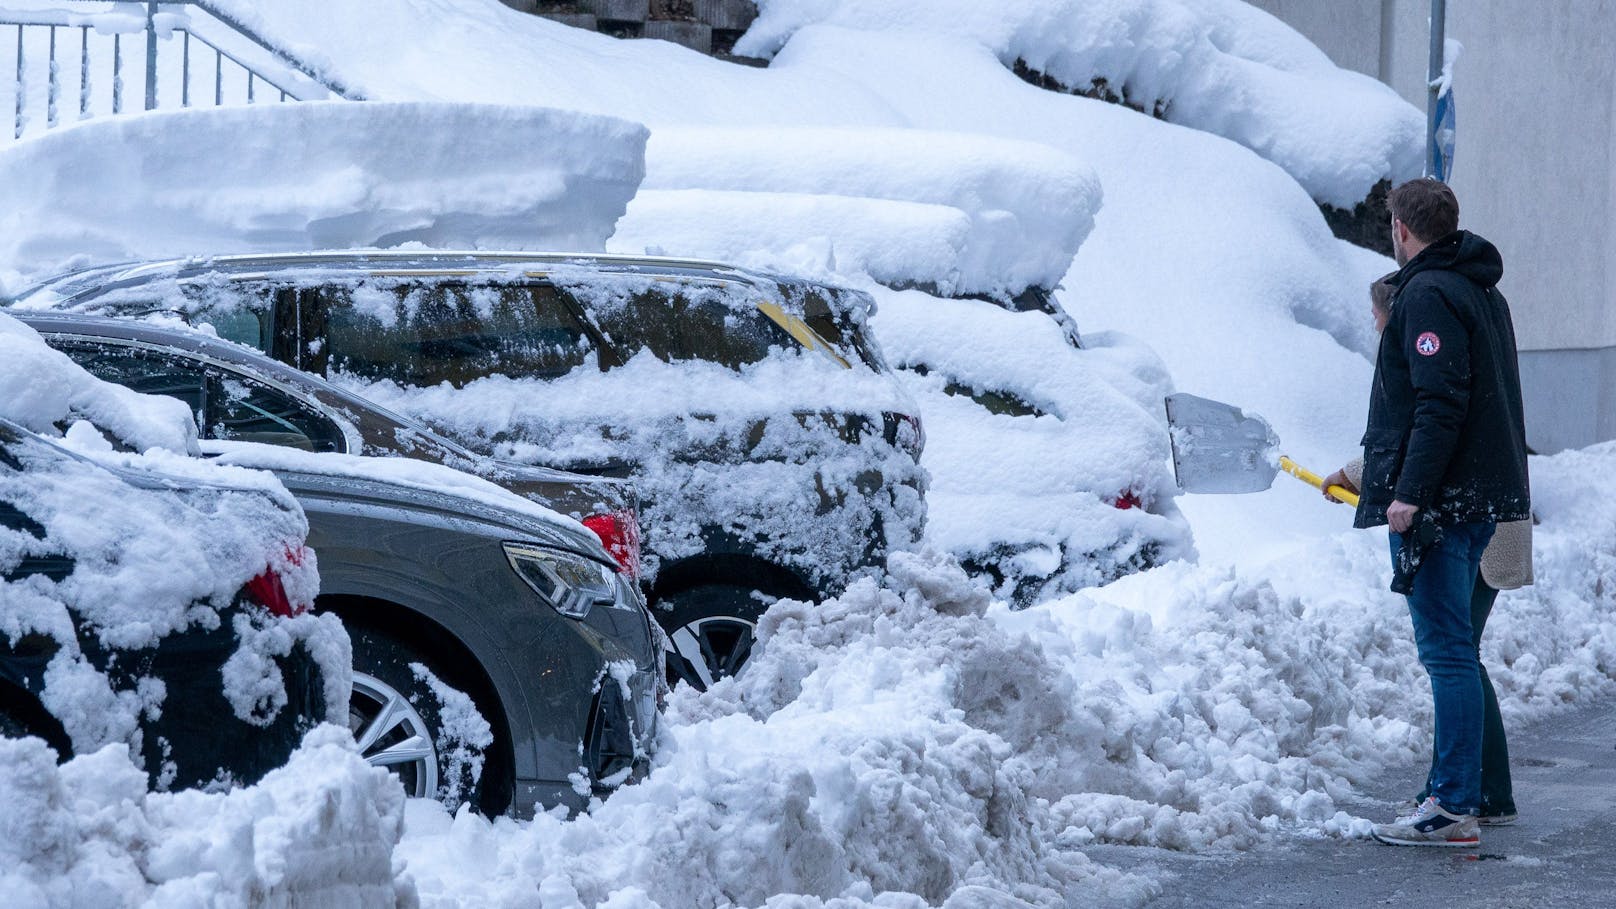 Die starken Schneefälle der letzten 24 Stunden mit bis zu 1 Meter Neuschnee sorgten für Behinderungen auf den ansteigenden Straßenabschnitten durch hängengebliebene Fahrzeuge. Abreisende Gäste hatten Mühe die zum Teil komplett eingeschneiten Autos wieder flott zu machen. In Kärnten sind 6.000 Haushalte ohne Strom.